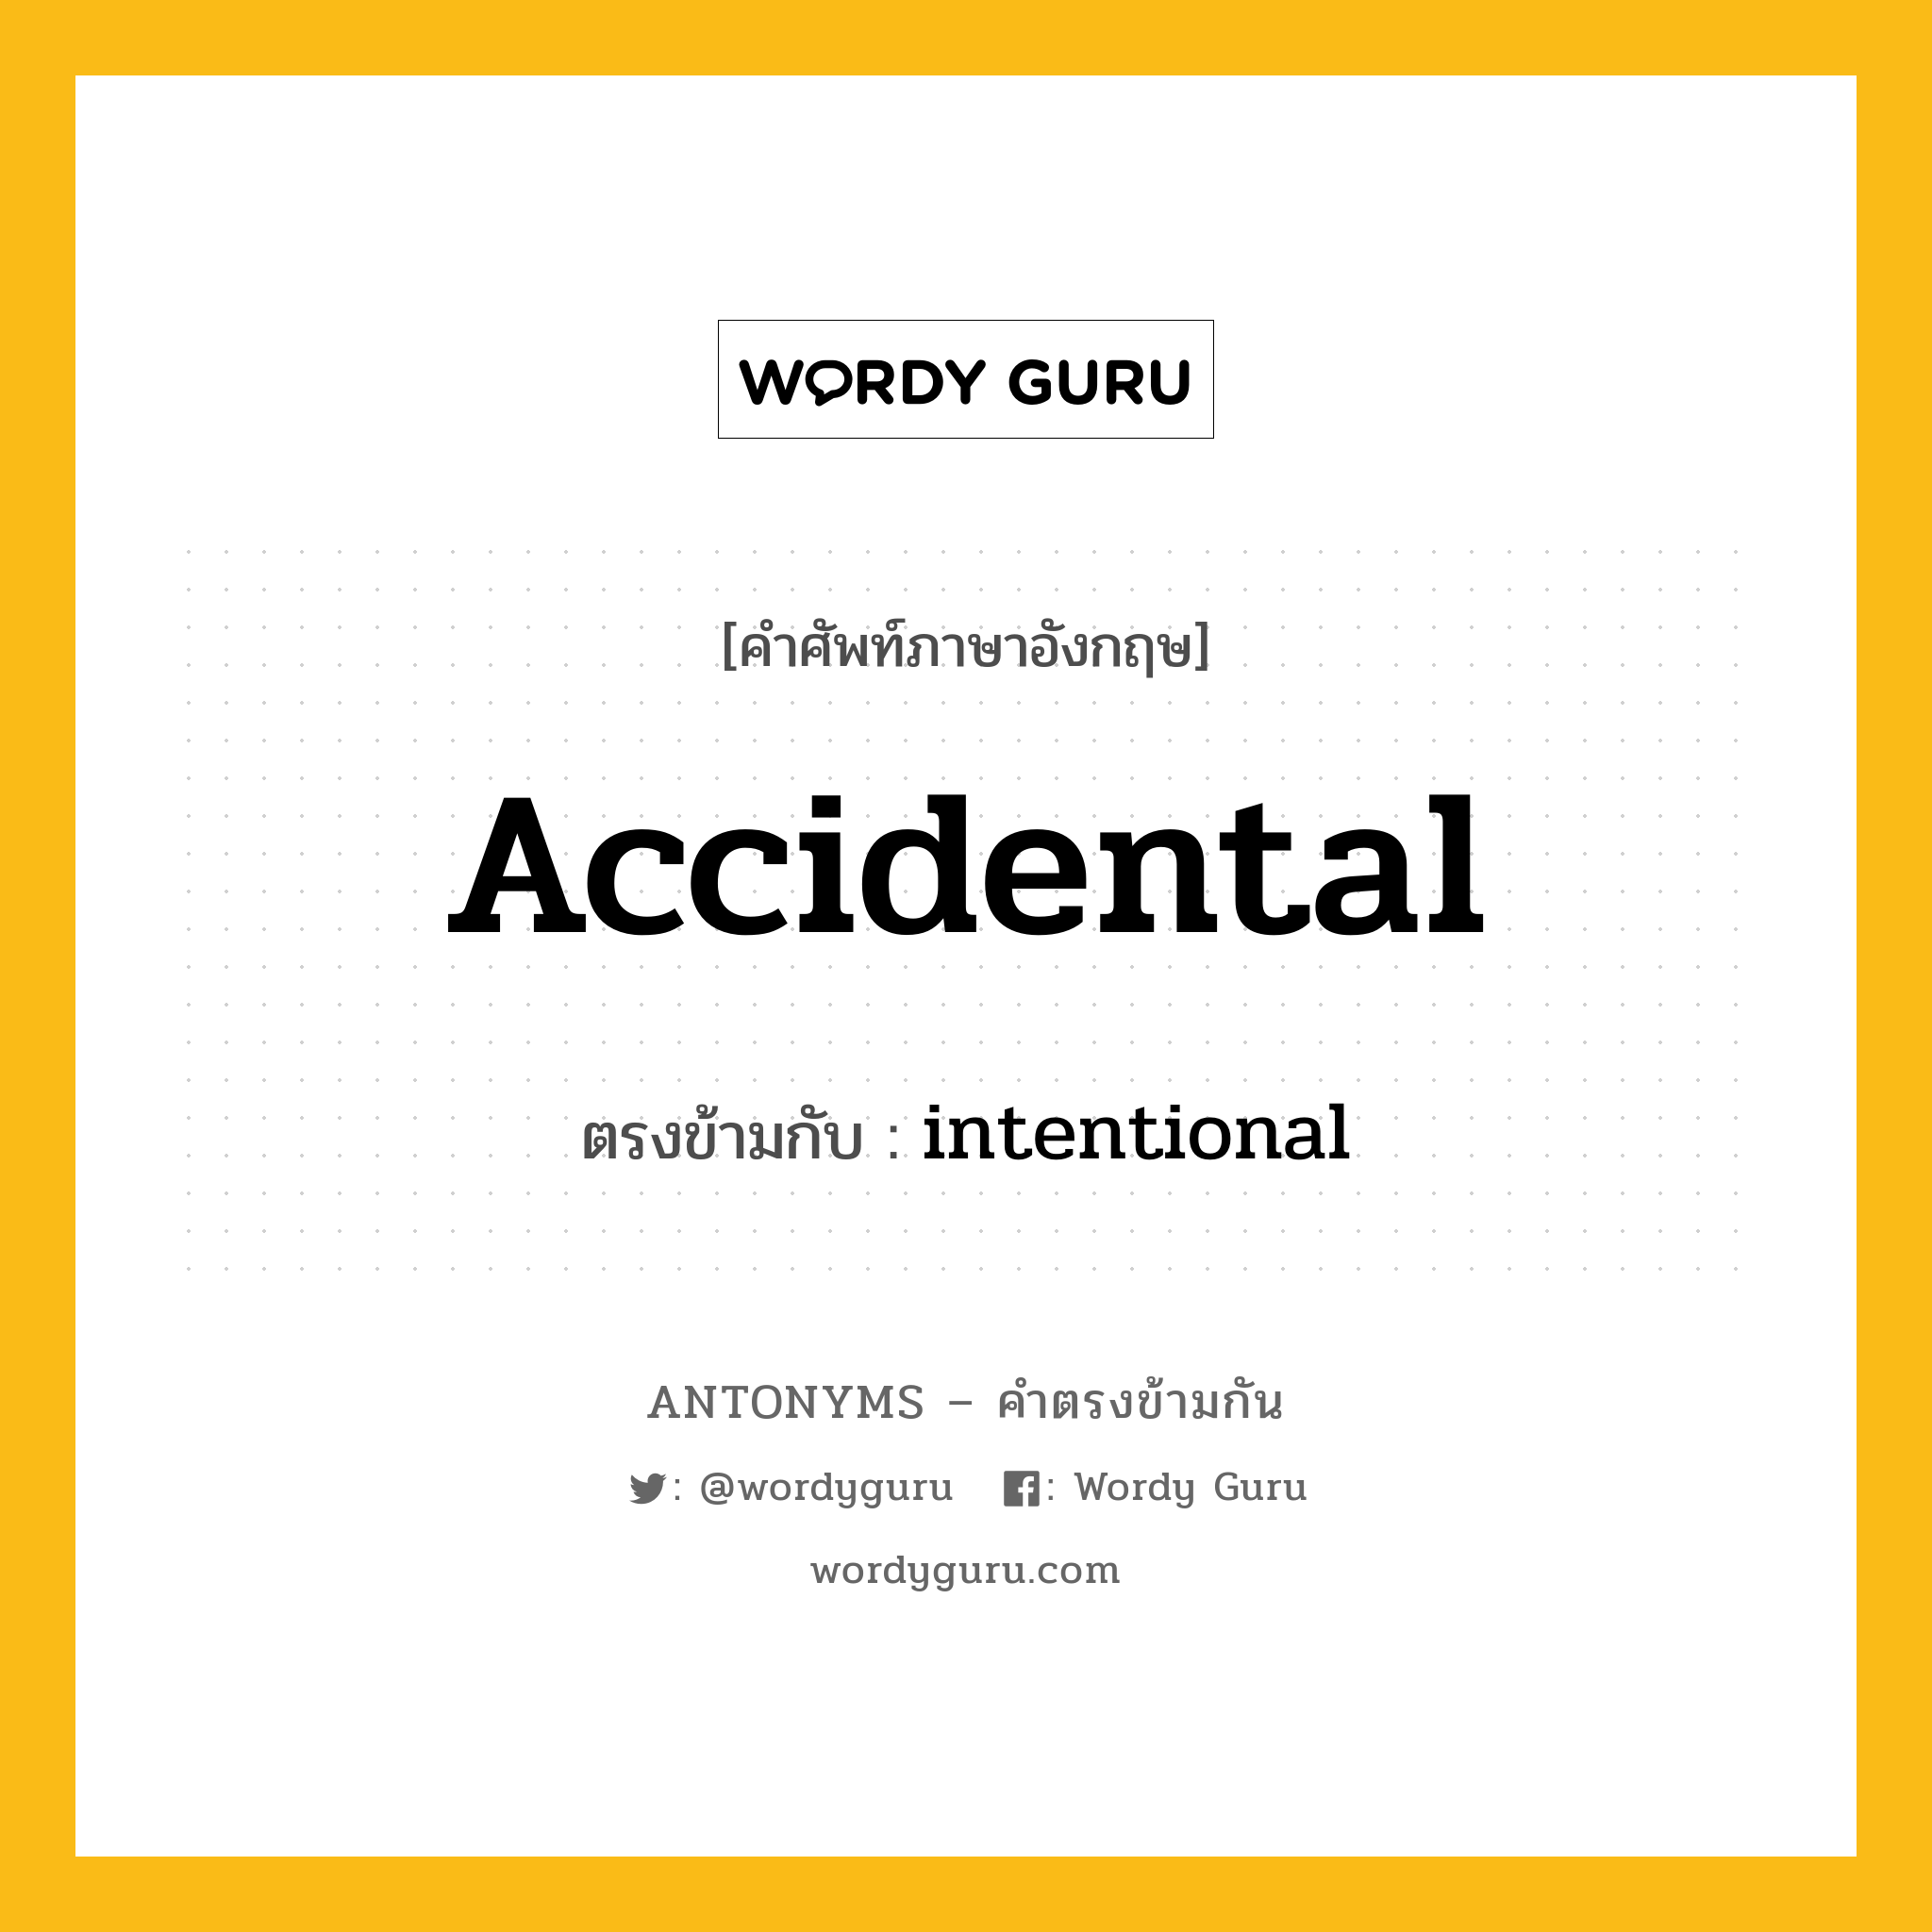 accidental เป็นคำตรงข้ามกับคำไหนบ้าง?, คำศัพท์ภาษาอังกฤษ accidental ตรงข้ามกับ intentional หมวด intentional